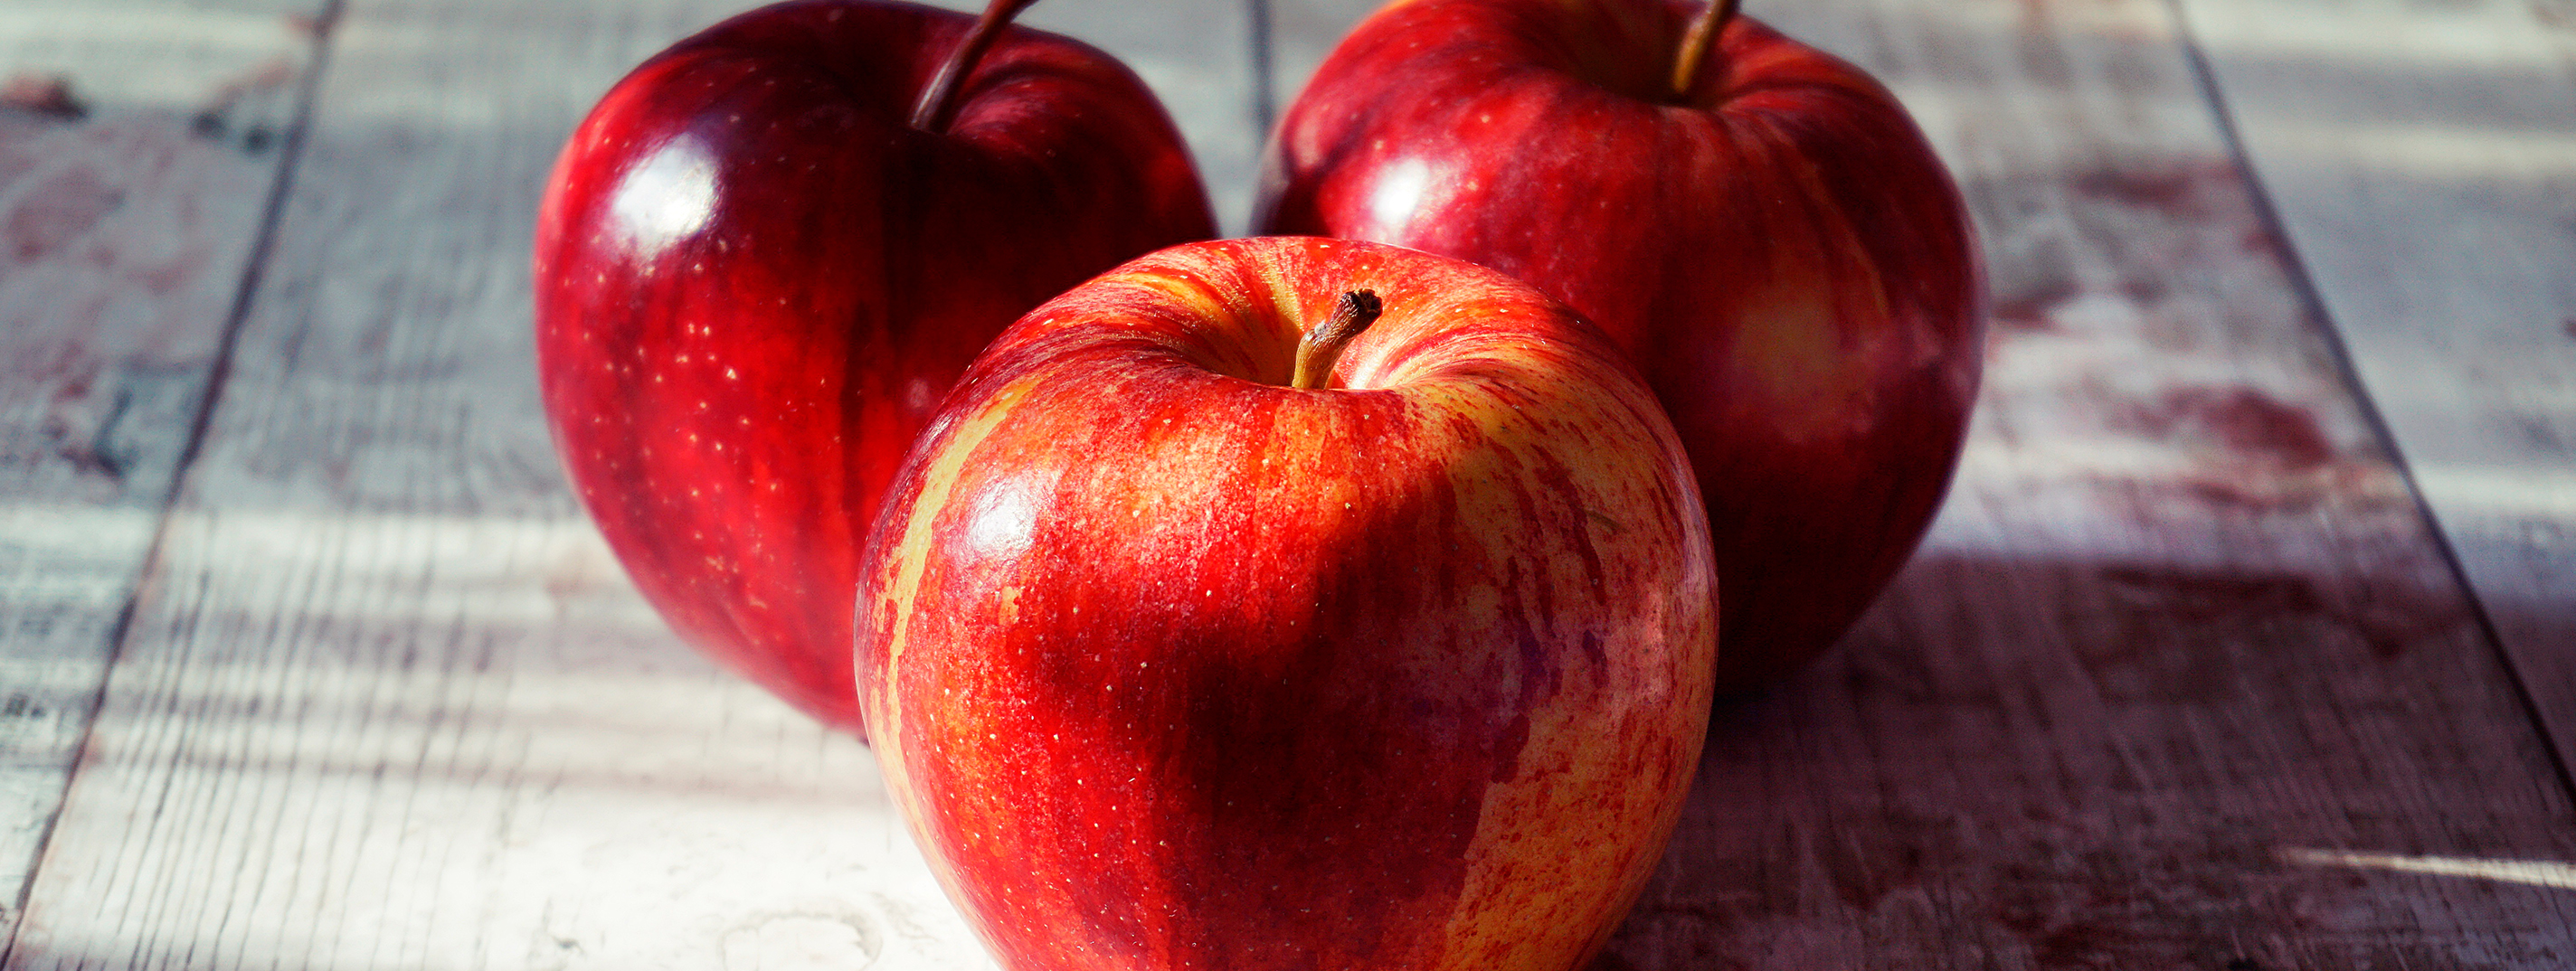 Что нужно знать про яблоки?